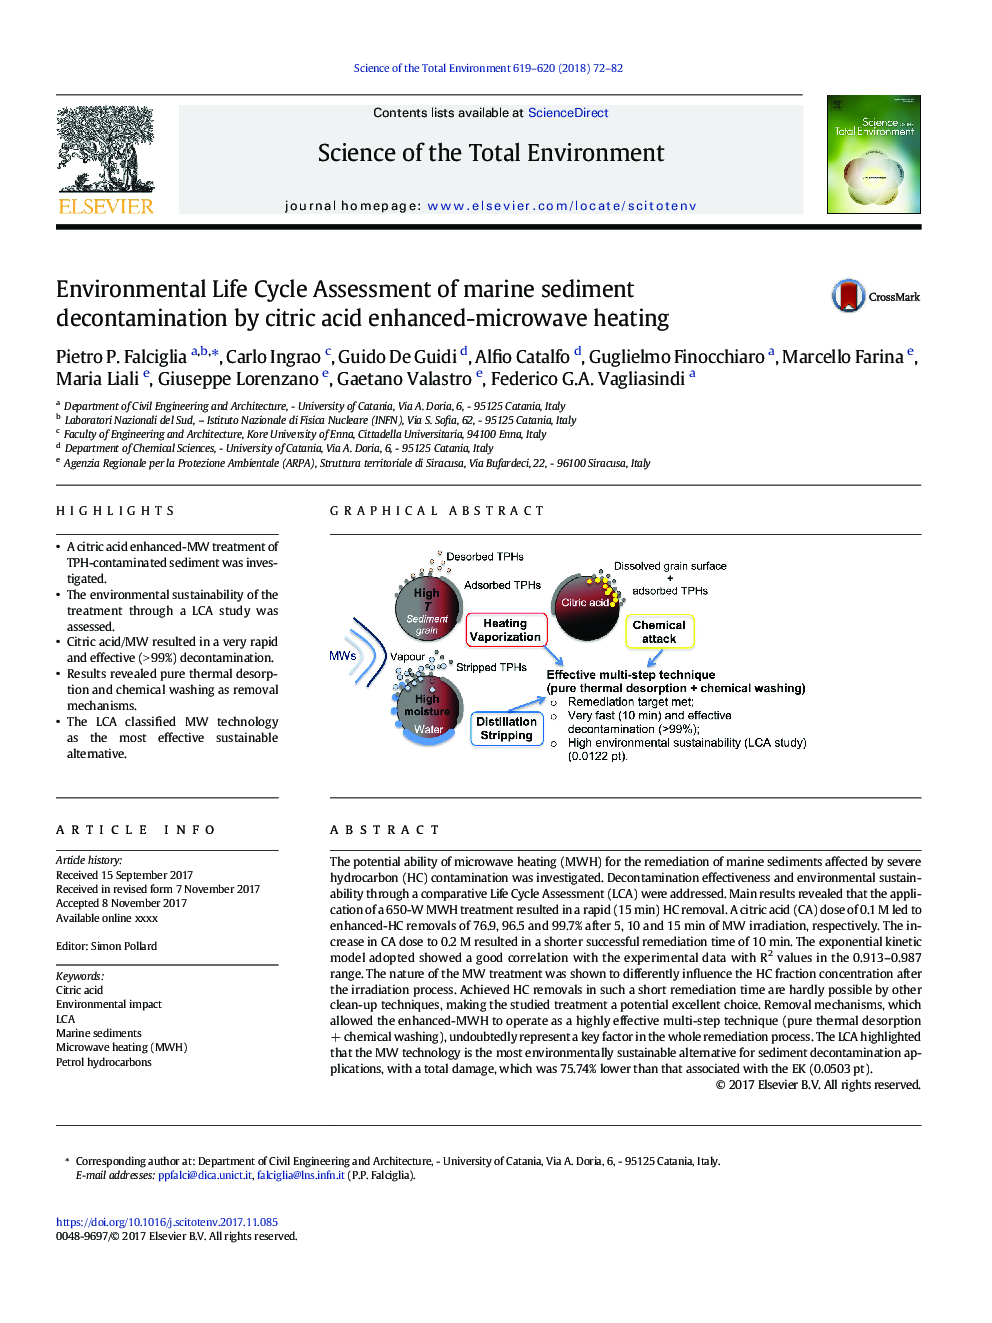 ارزیابی چرخه عمر زیست محیطی از تصفیه رسوبات دریایی توسط گرم شدن مایکروویو با اسید سیتریک 